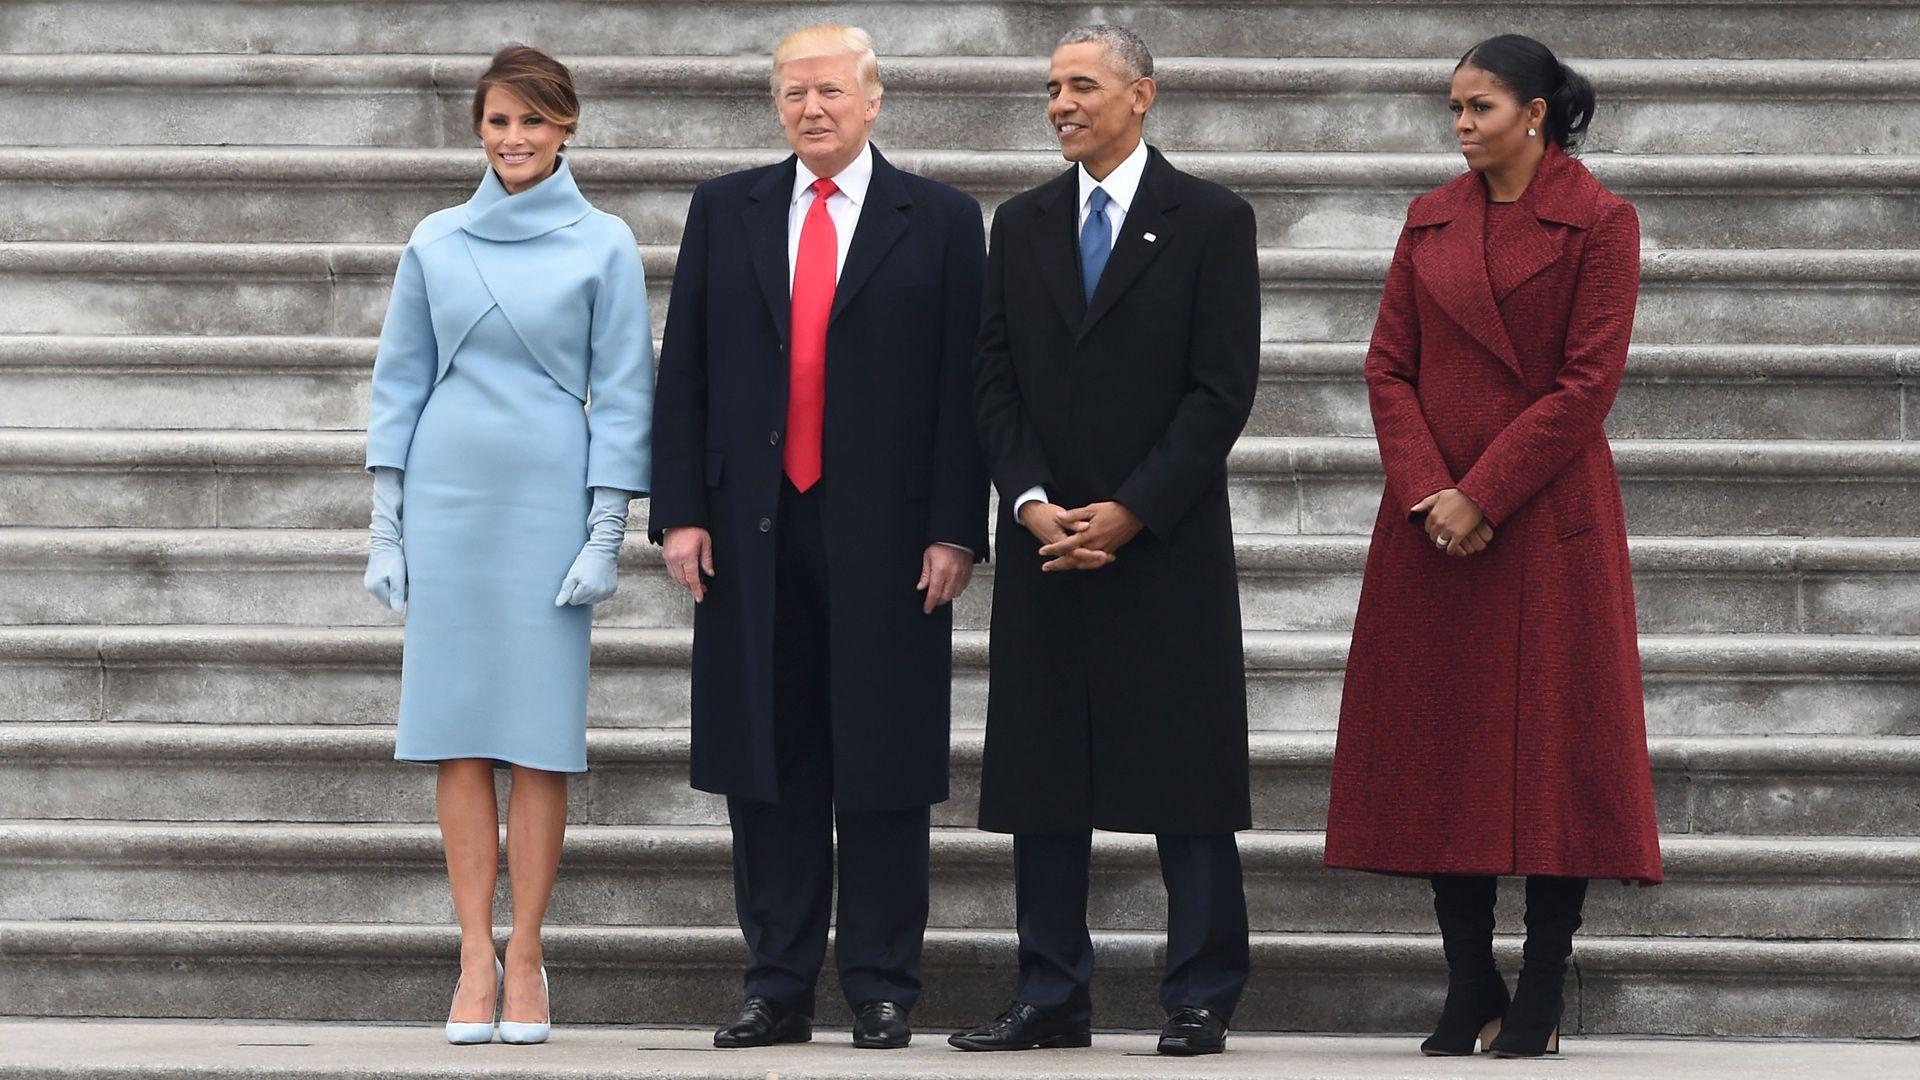 Trump inauguration: Compare 2017 with 2009